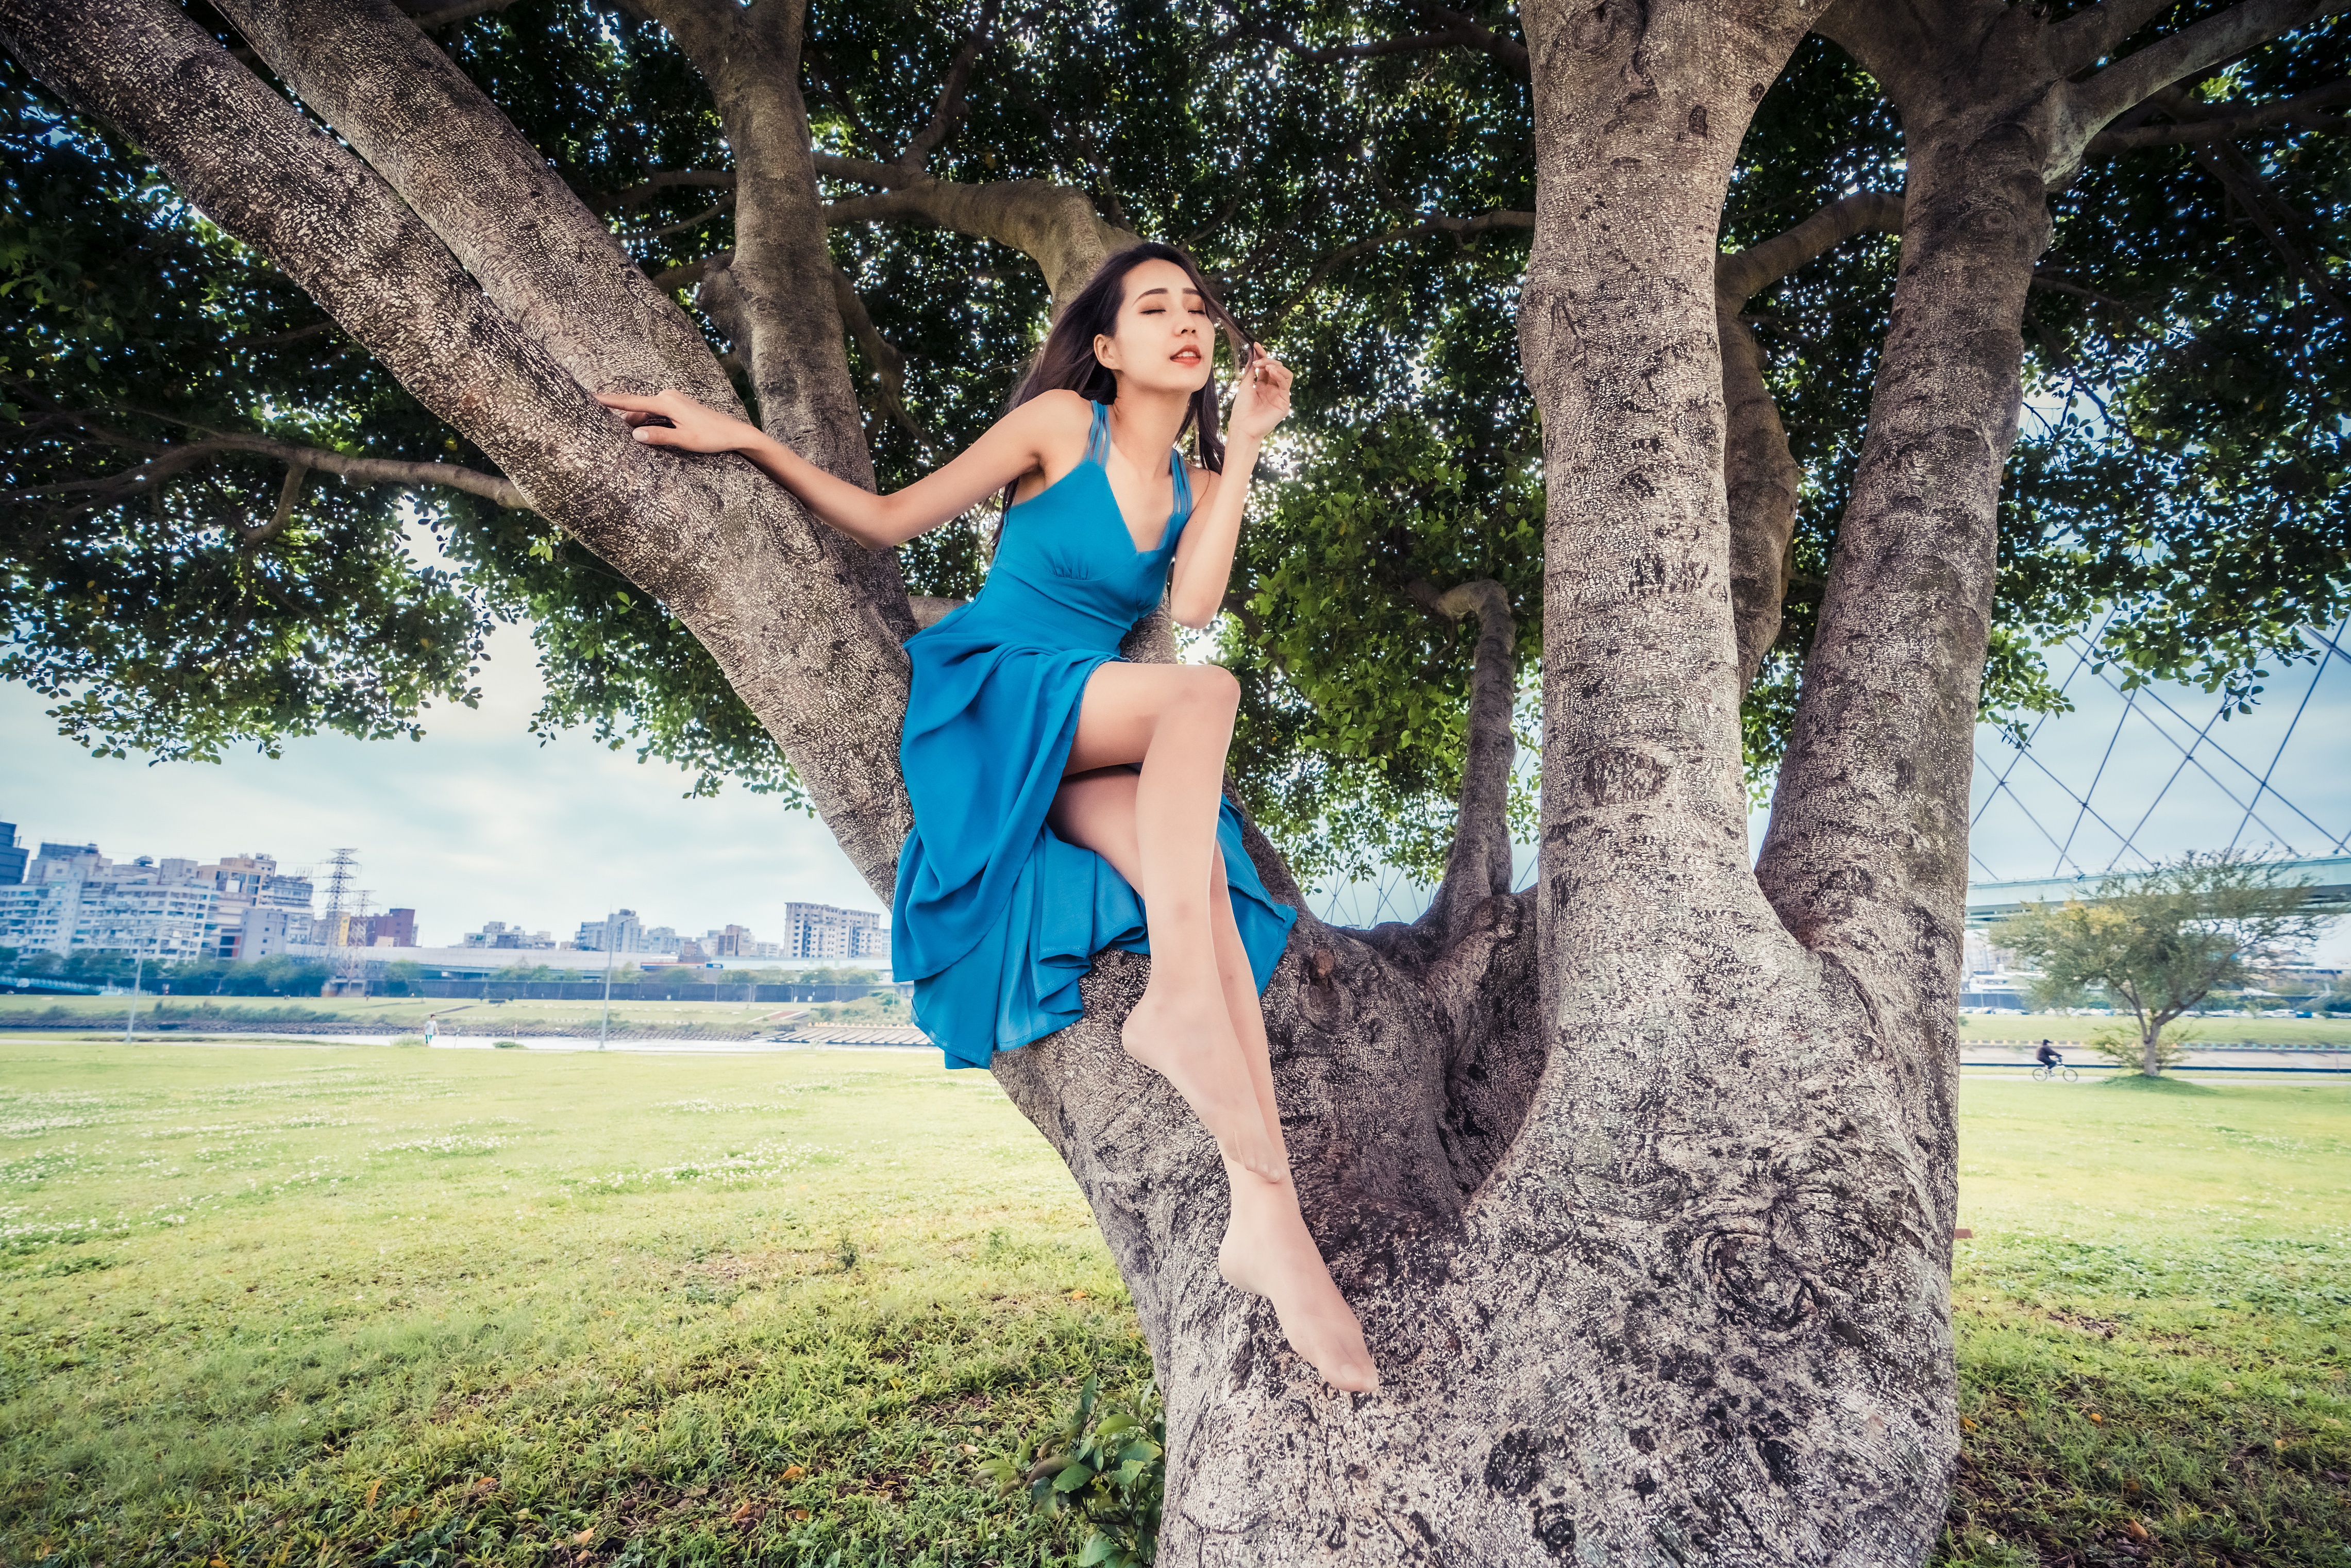 Asian Women Model Trees Sitting Women Outdoors Long Hair Brunette Blue Dress Nylons Grass Skyline Br 4562x3043